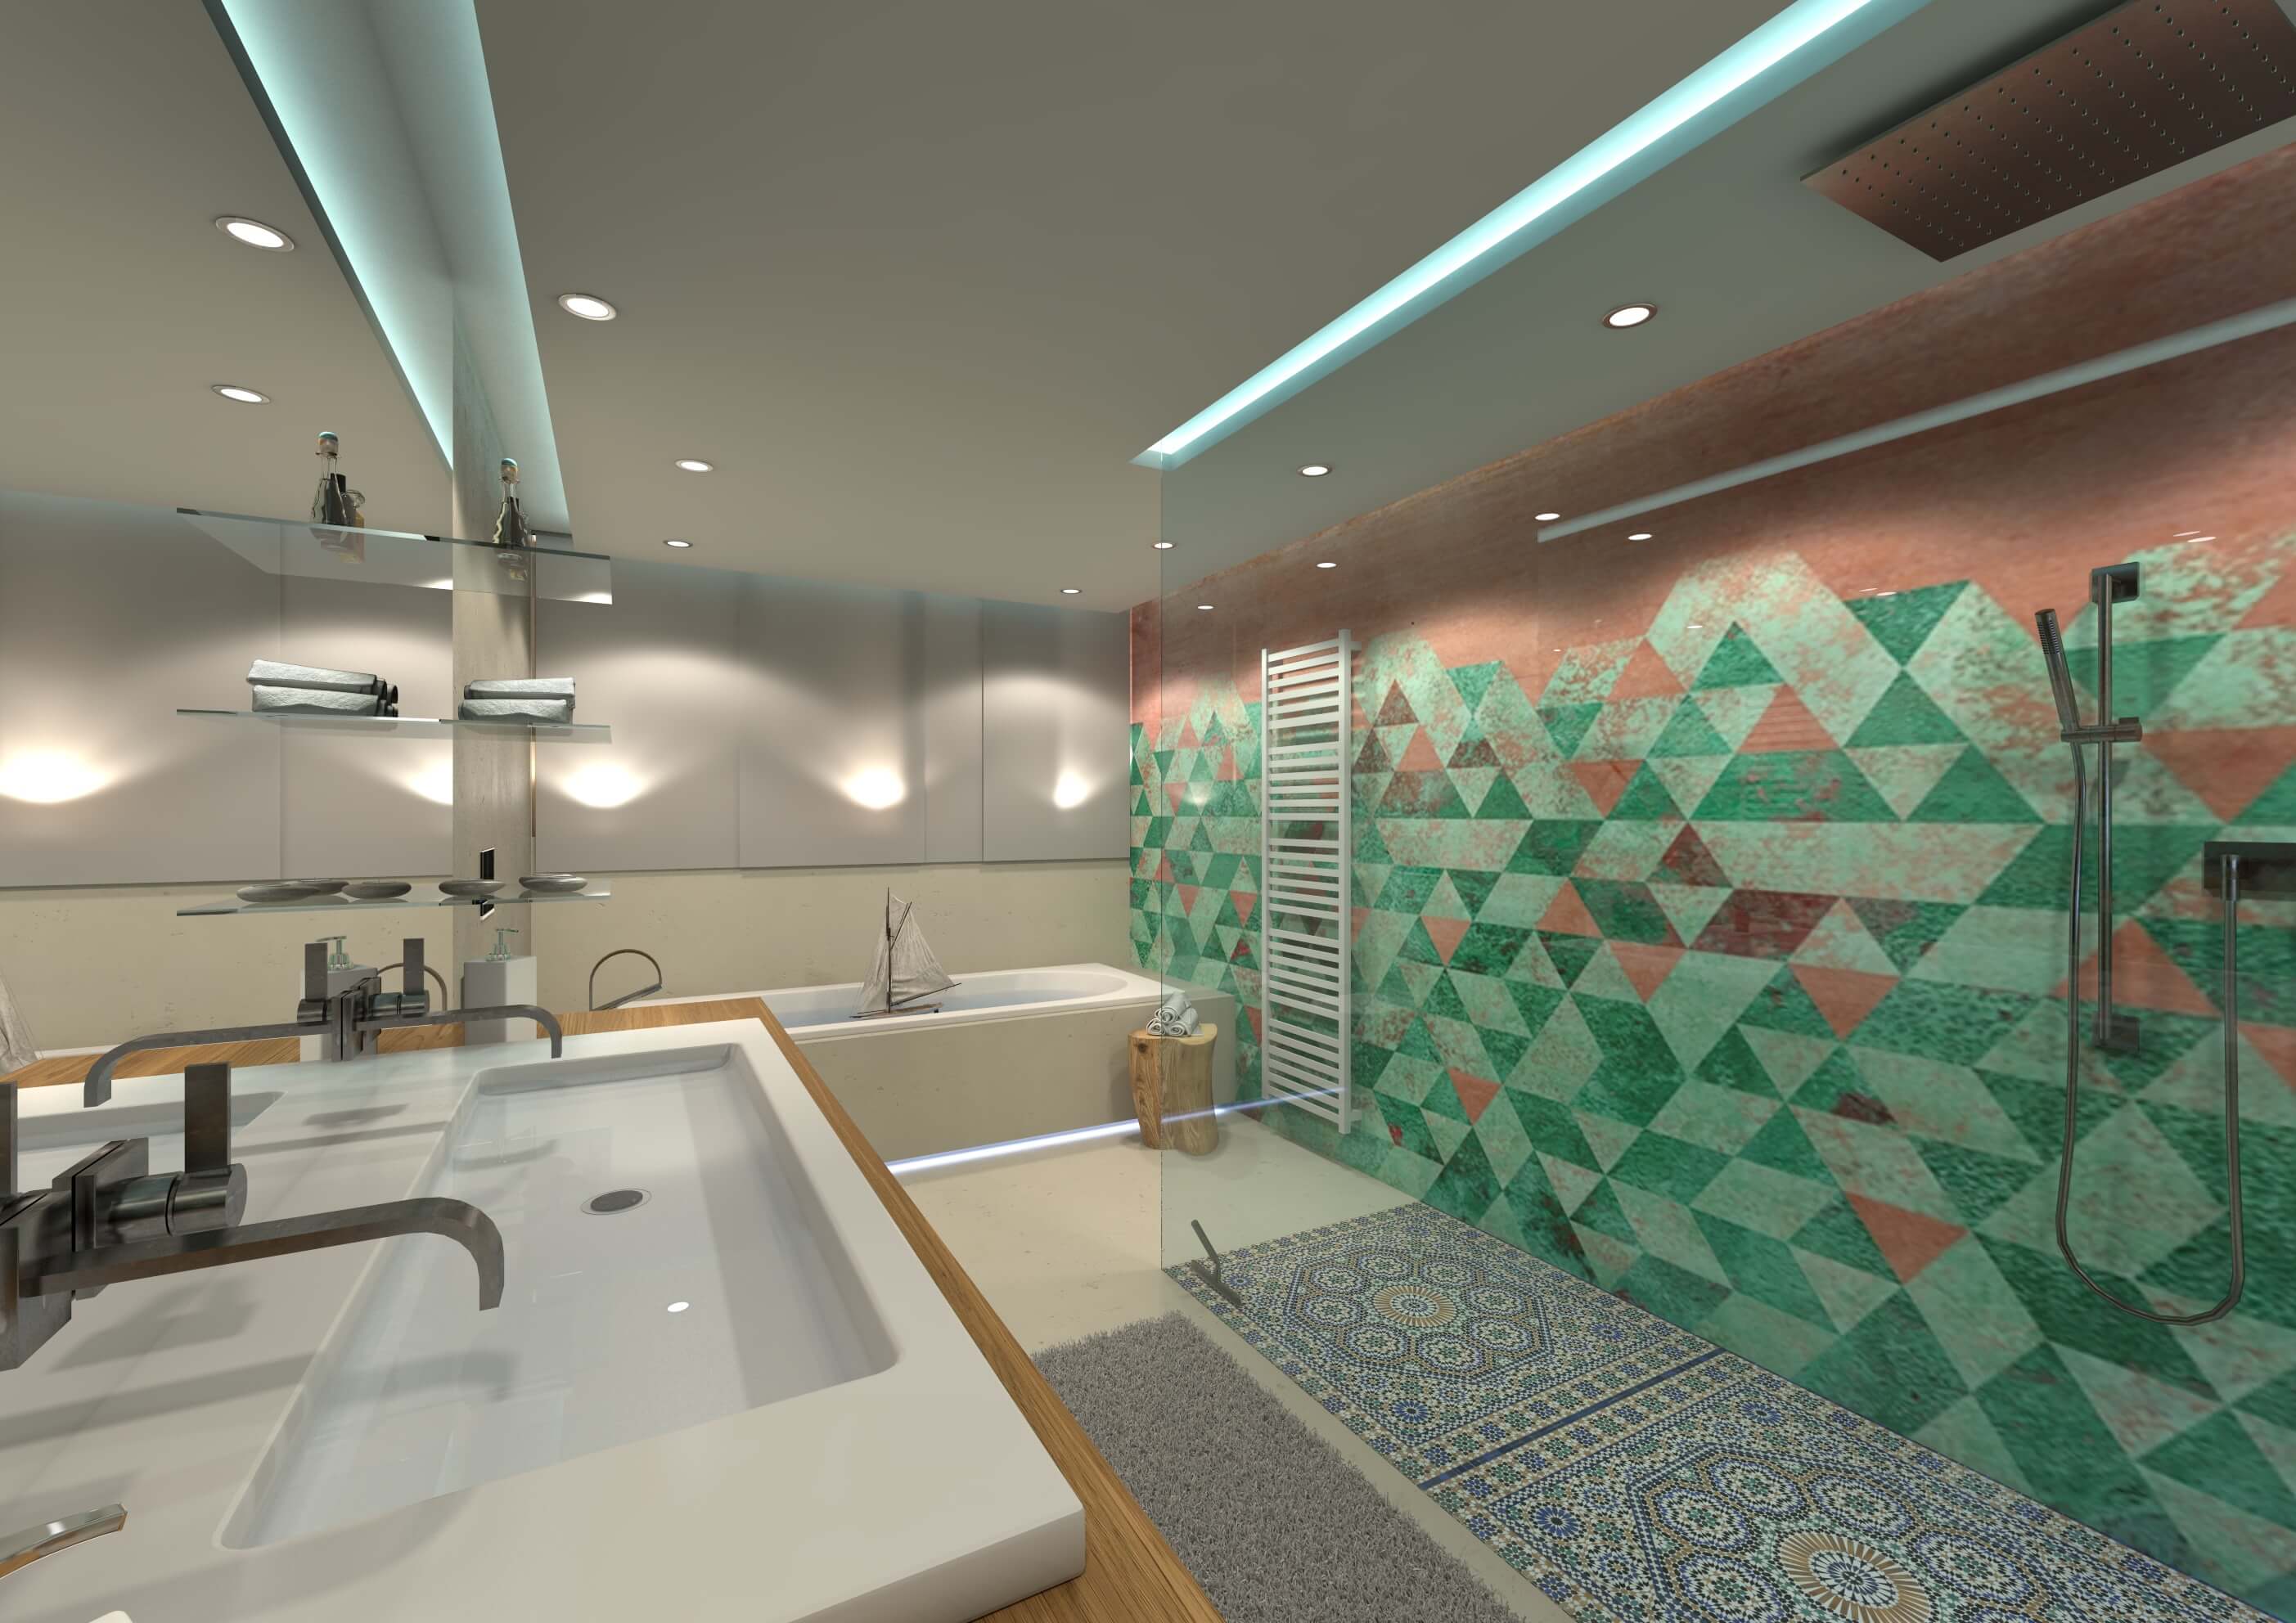 Badezimmer mit mediterran inspirierter Wall and Deco Tapete